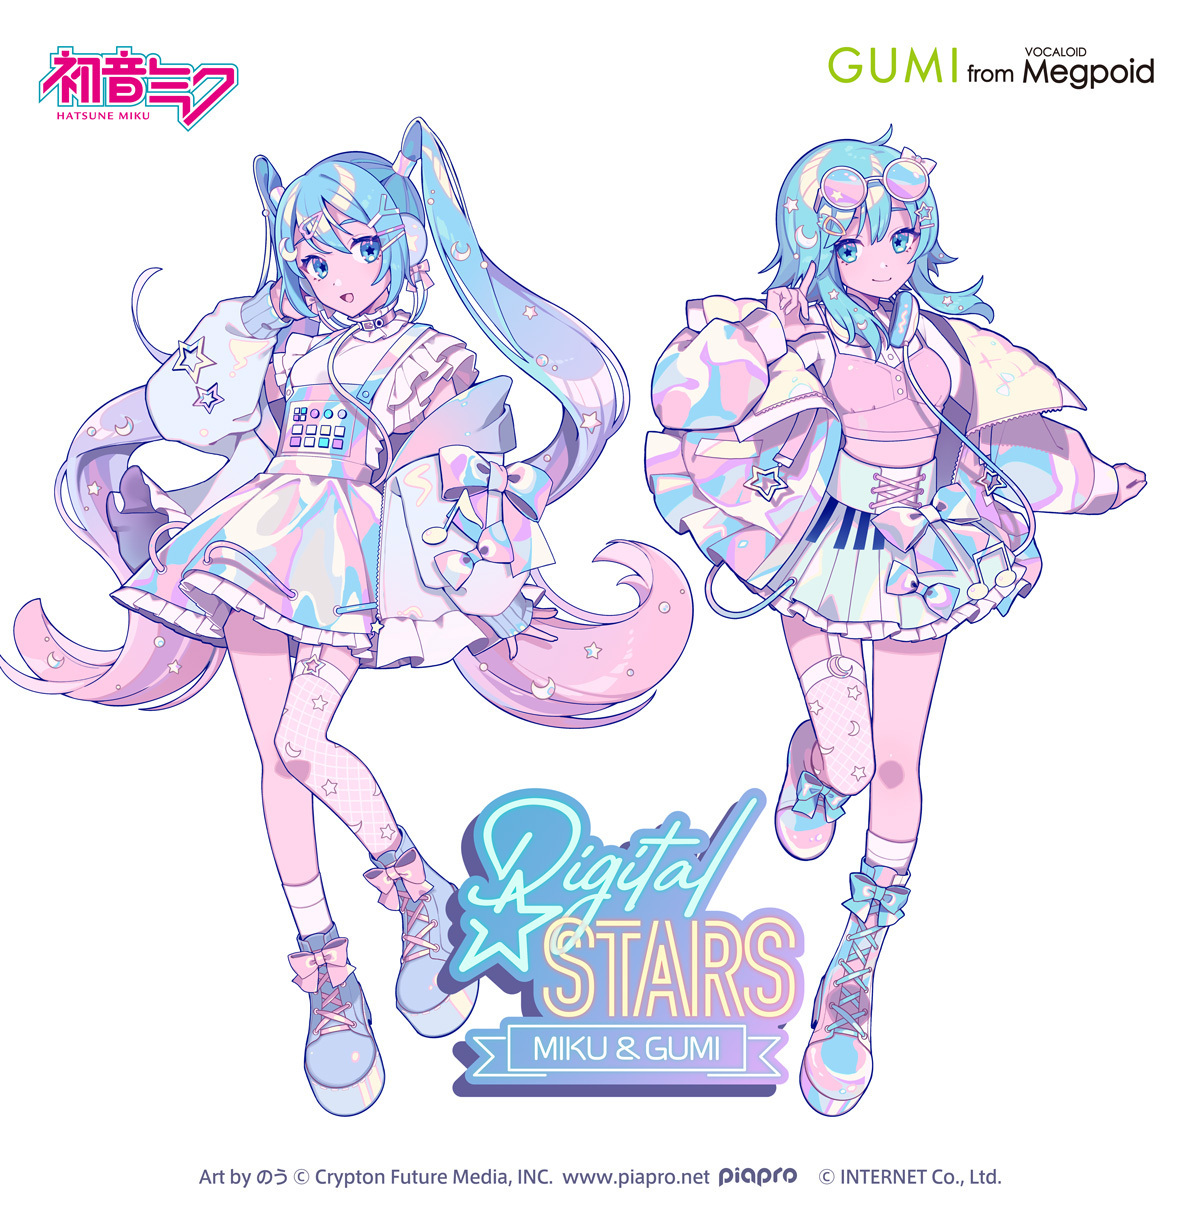 待望の公式コラボ！ 音楽イベント「Digital Stars feat. MIKU & GUMI